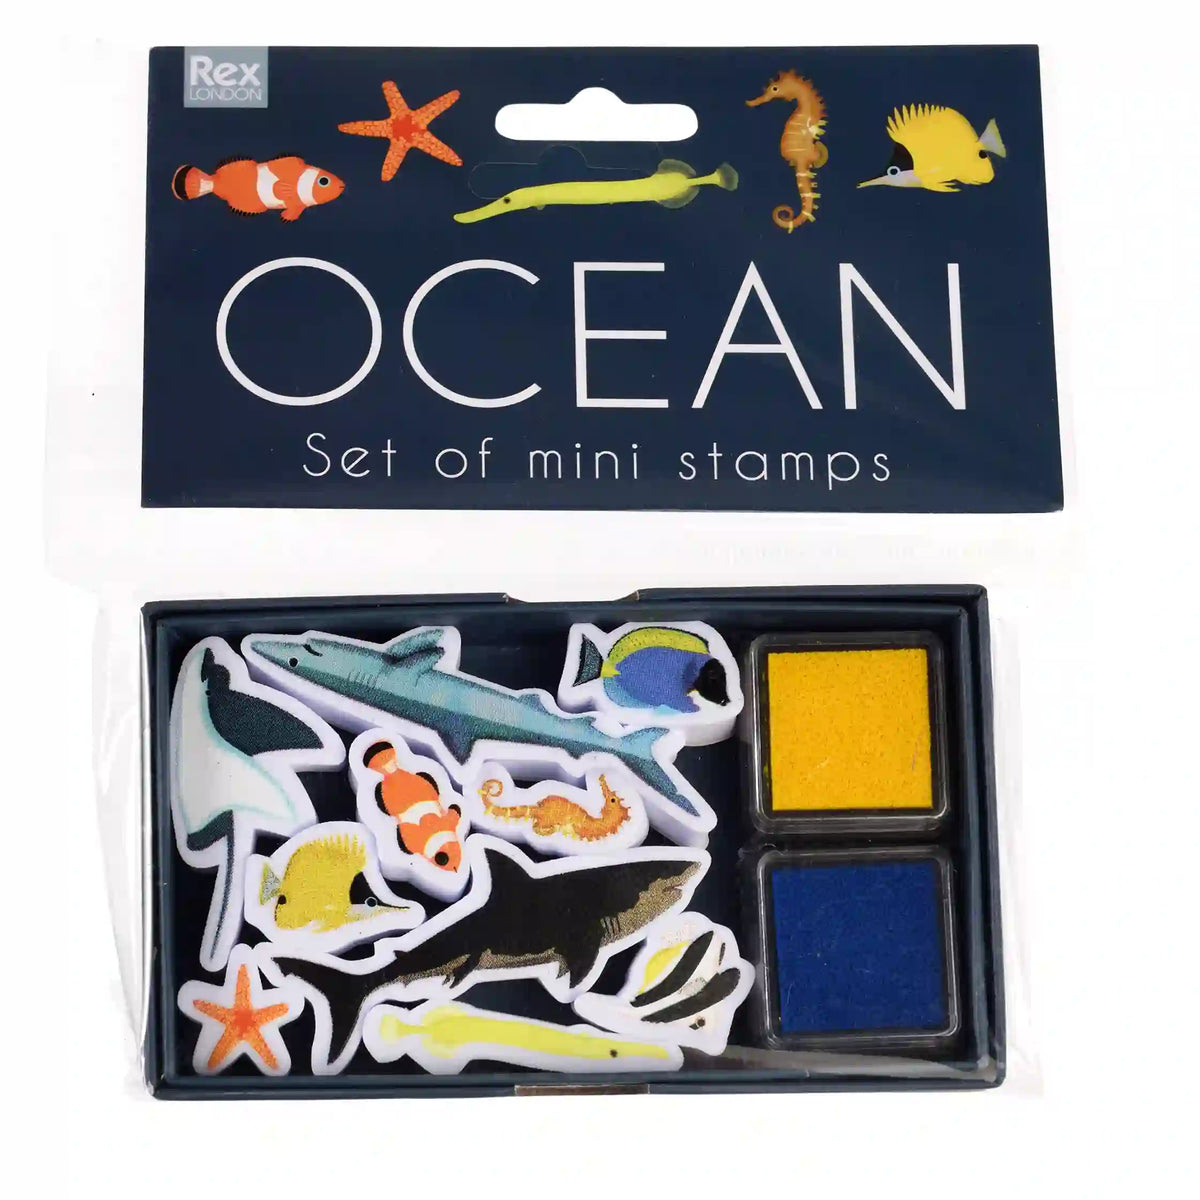 Ocean set of mini stamps